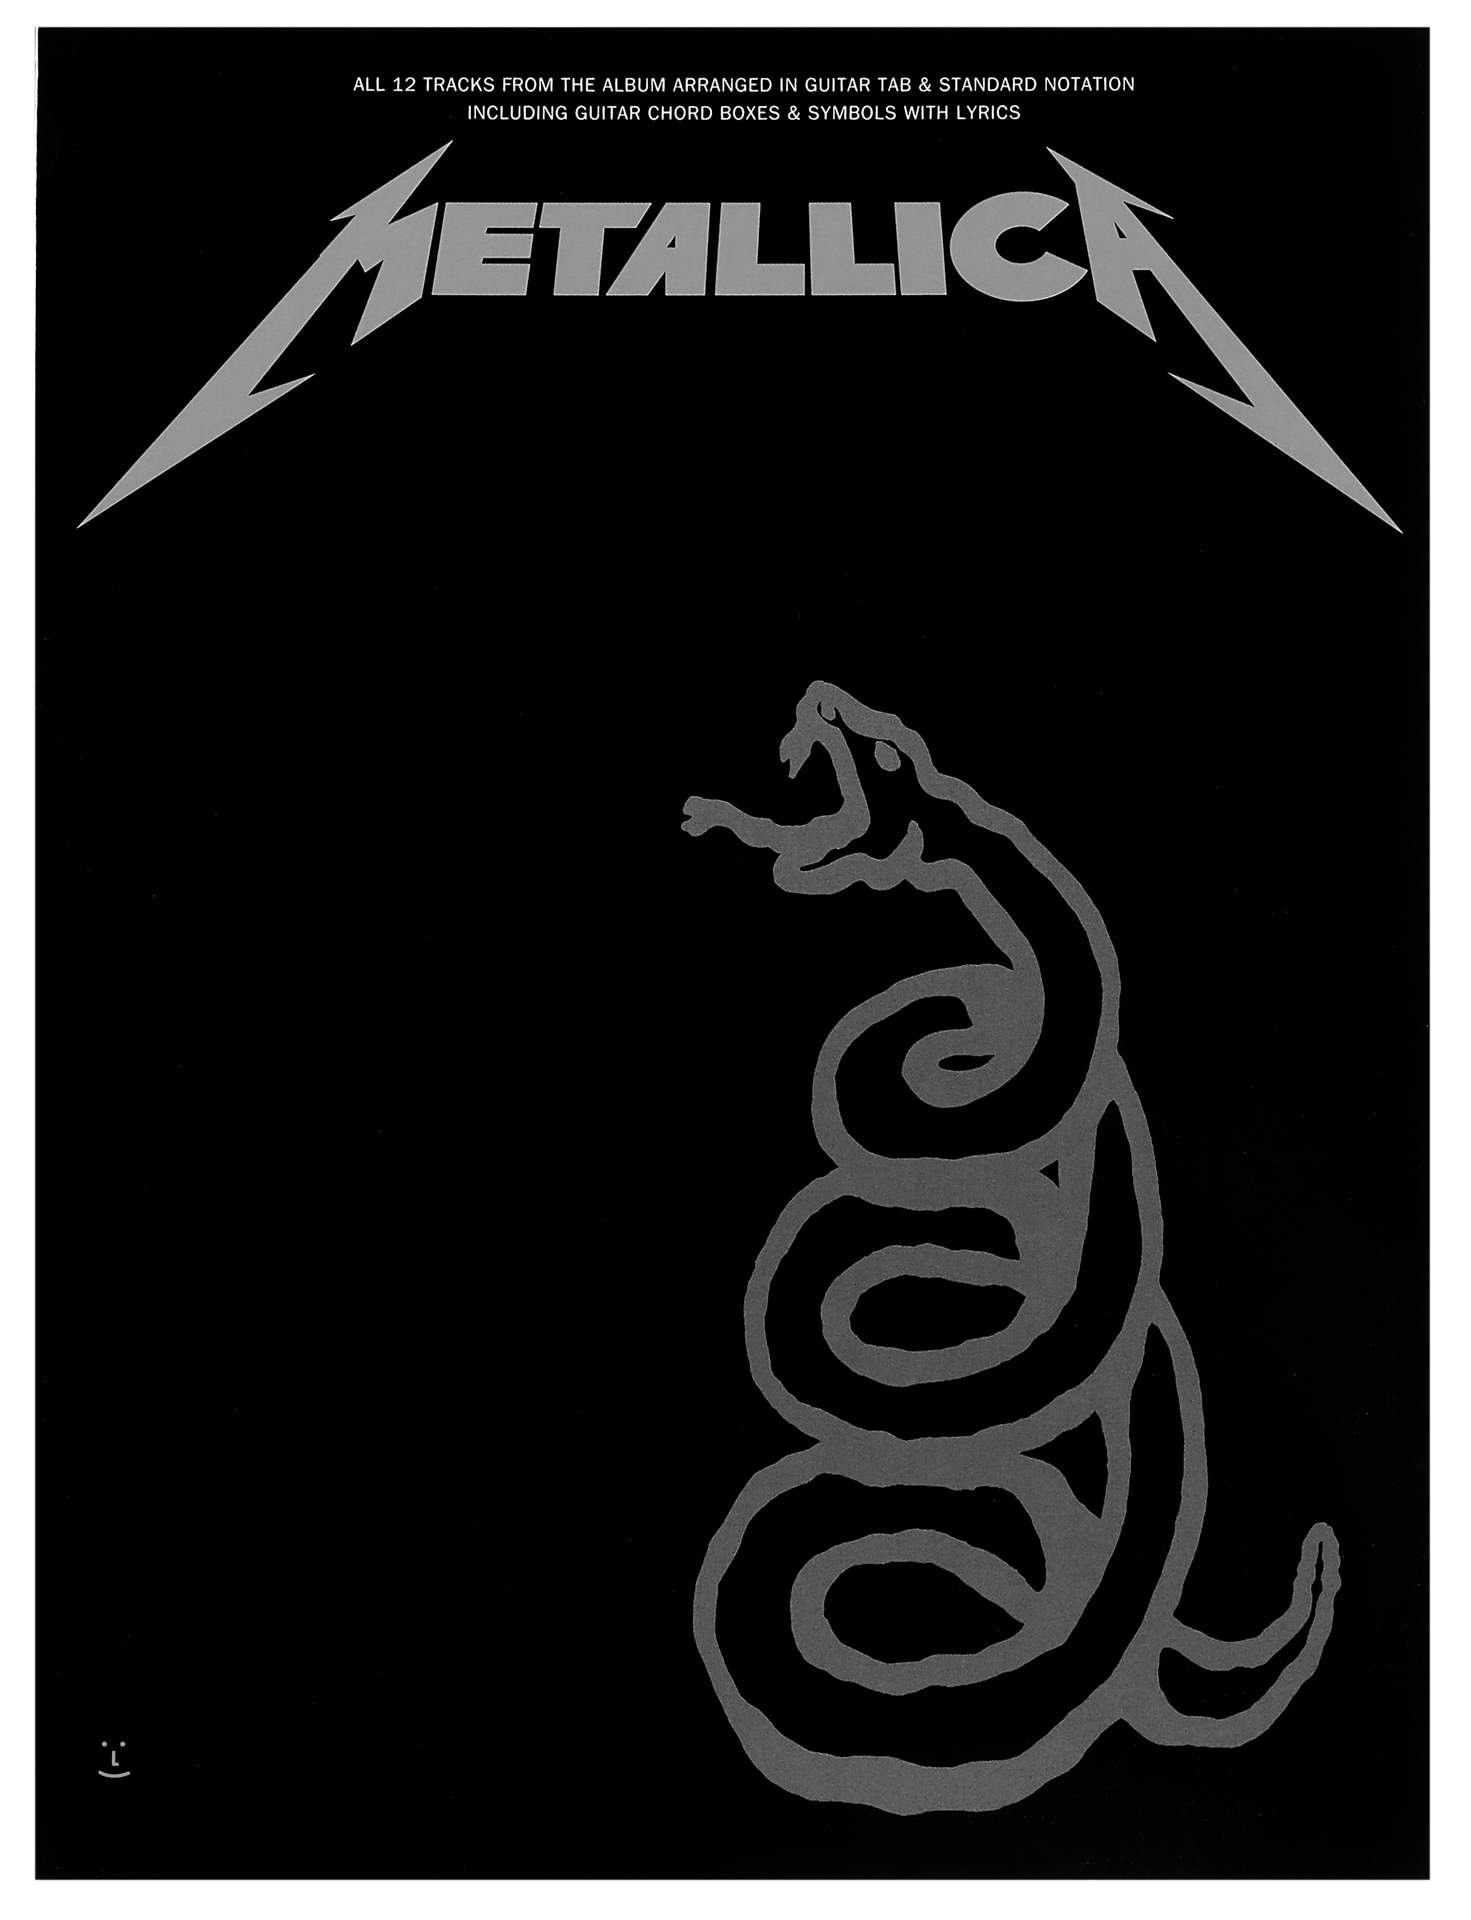 The Genius Of… The Black Album by Metallica